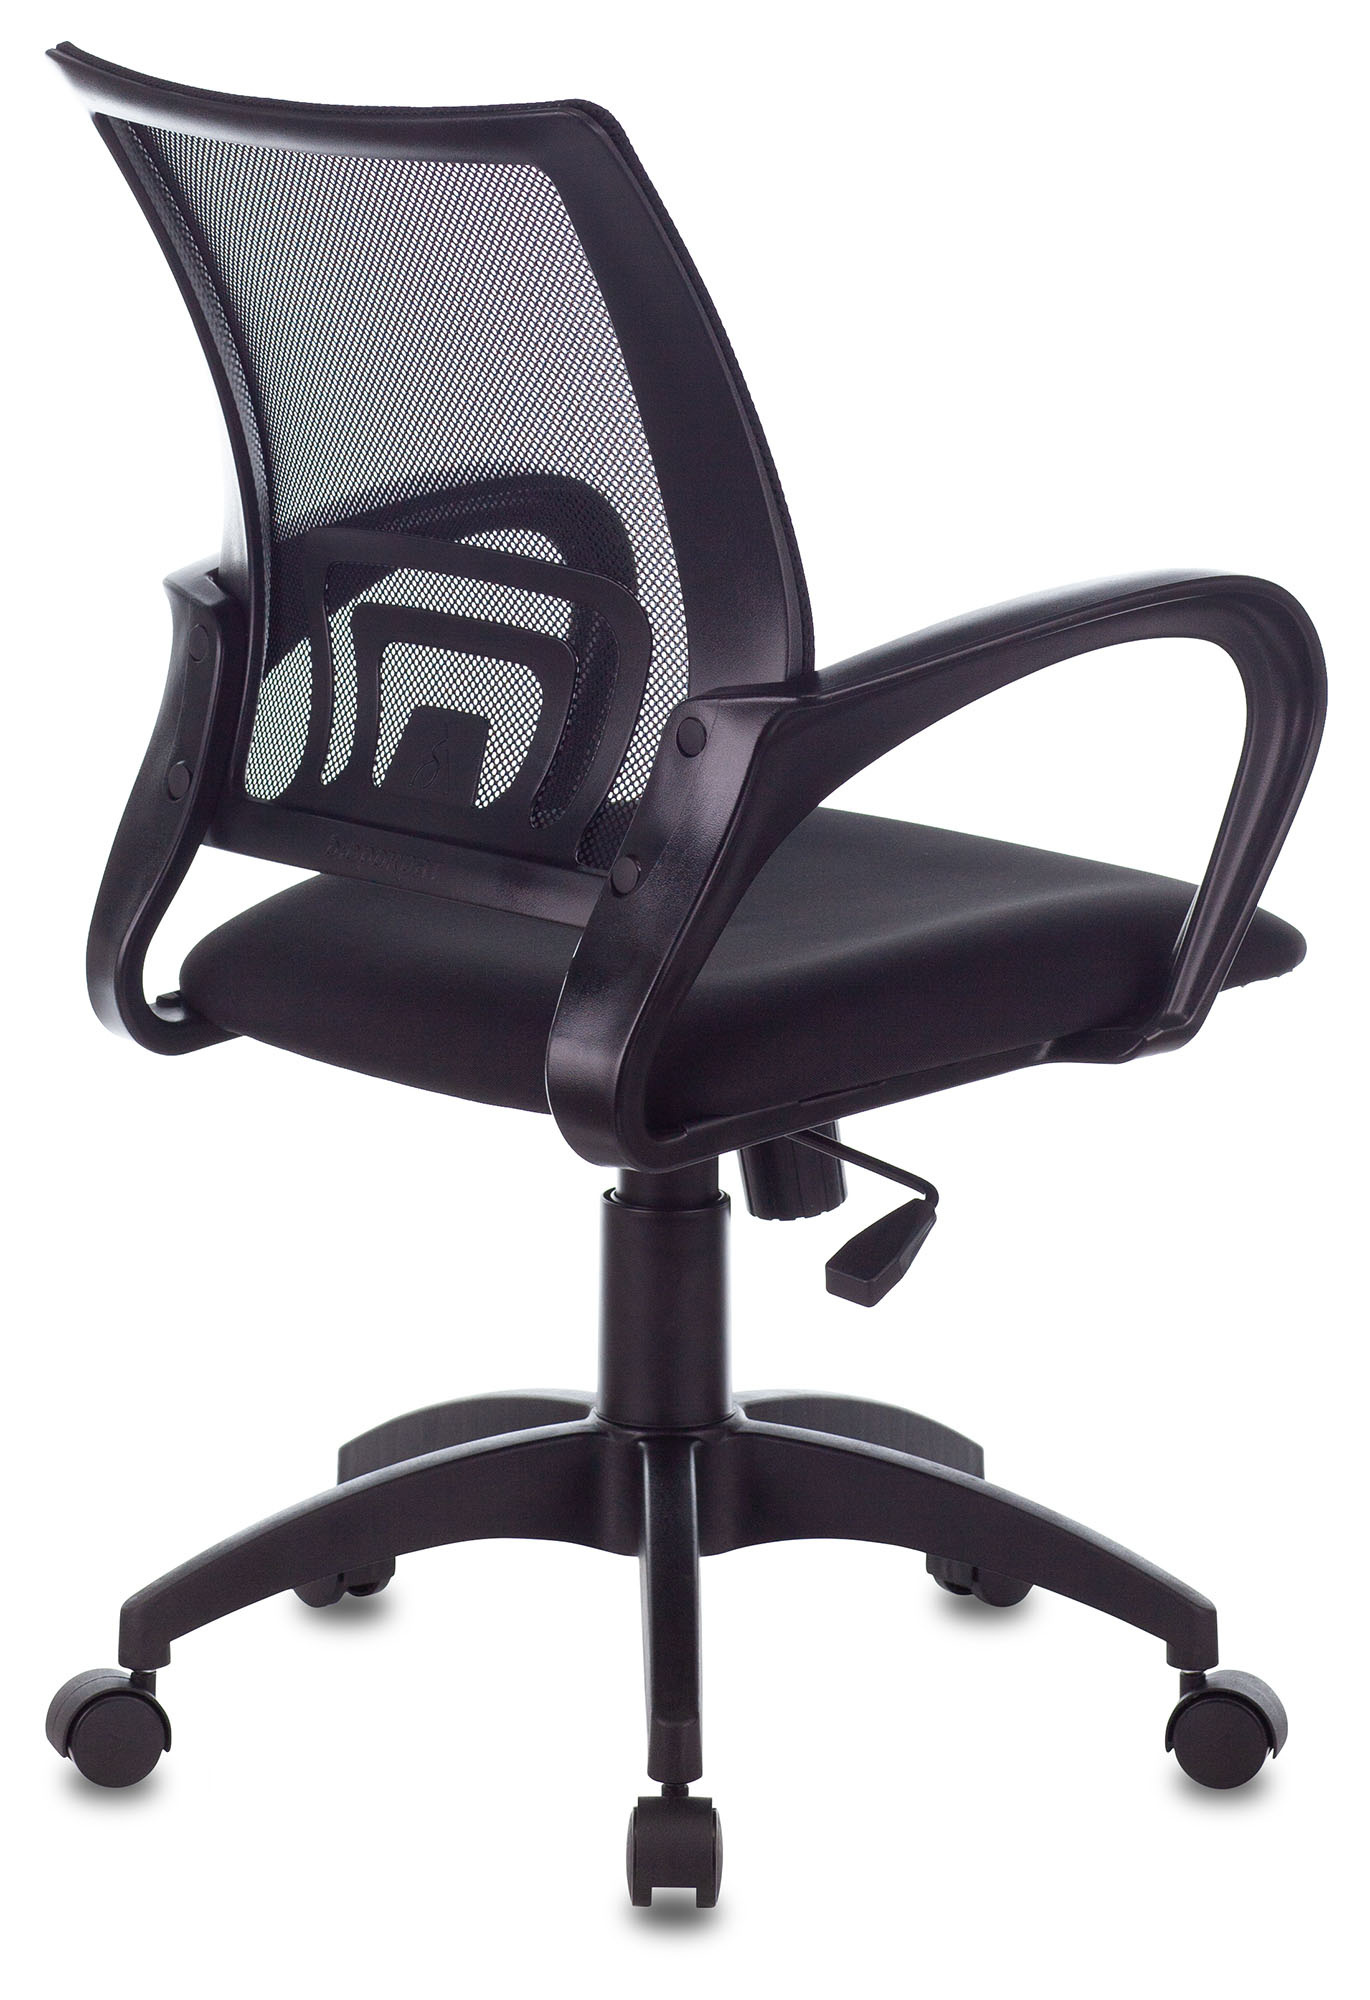 Ch 695nlt black кресло спинка сетка черный tw 01 сиденье черный tw 11